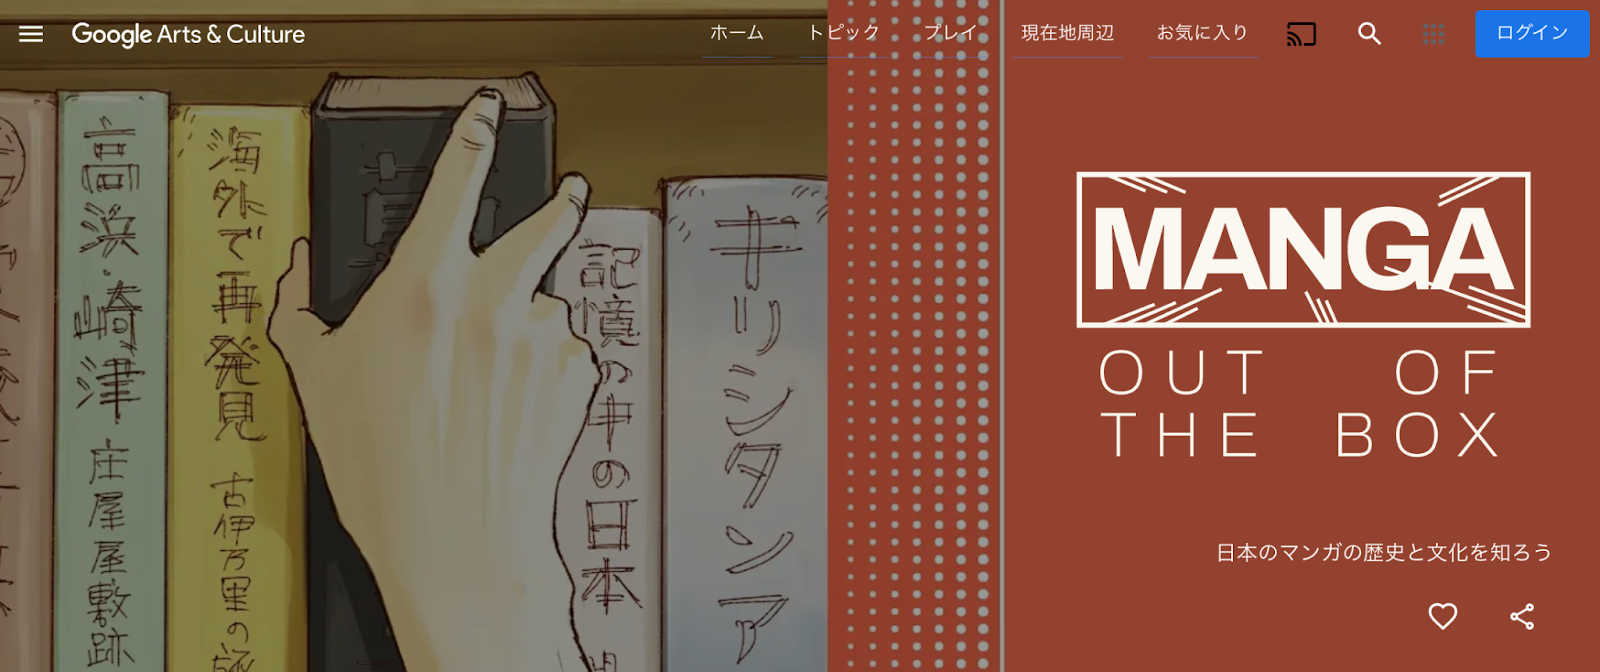 Google、マンガの歴史などについて学べる「Manga Out of The Box」公開